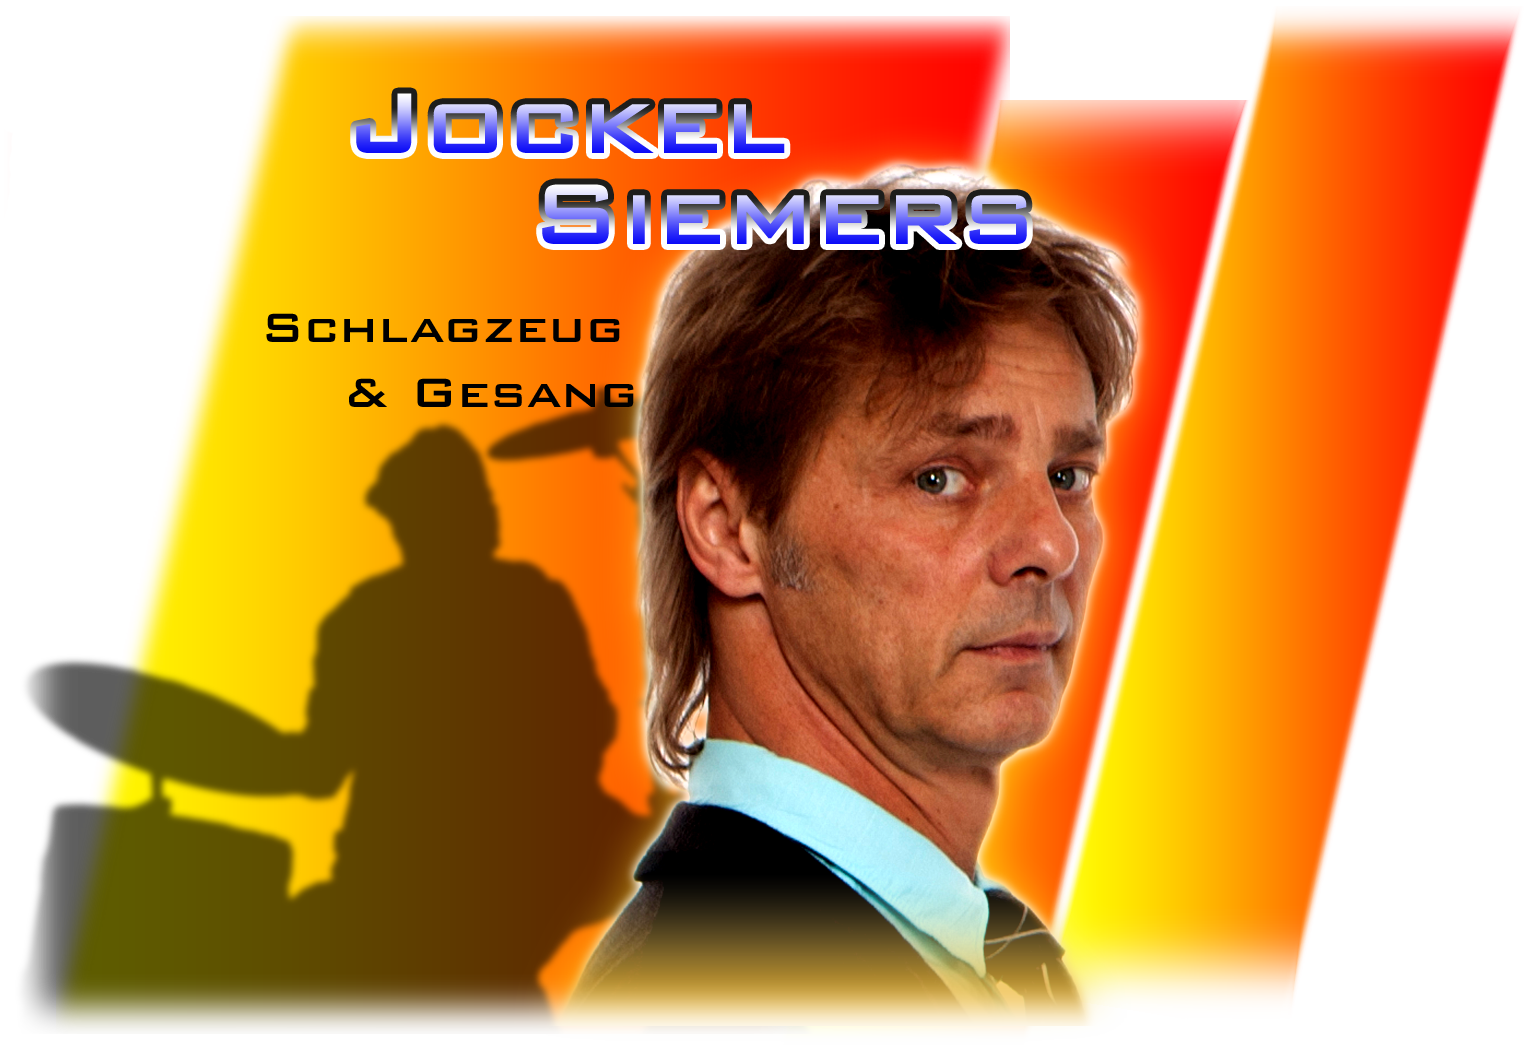 Jockel Siemers